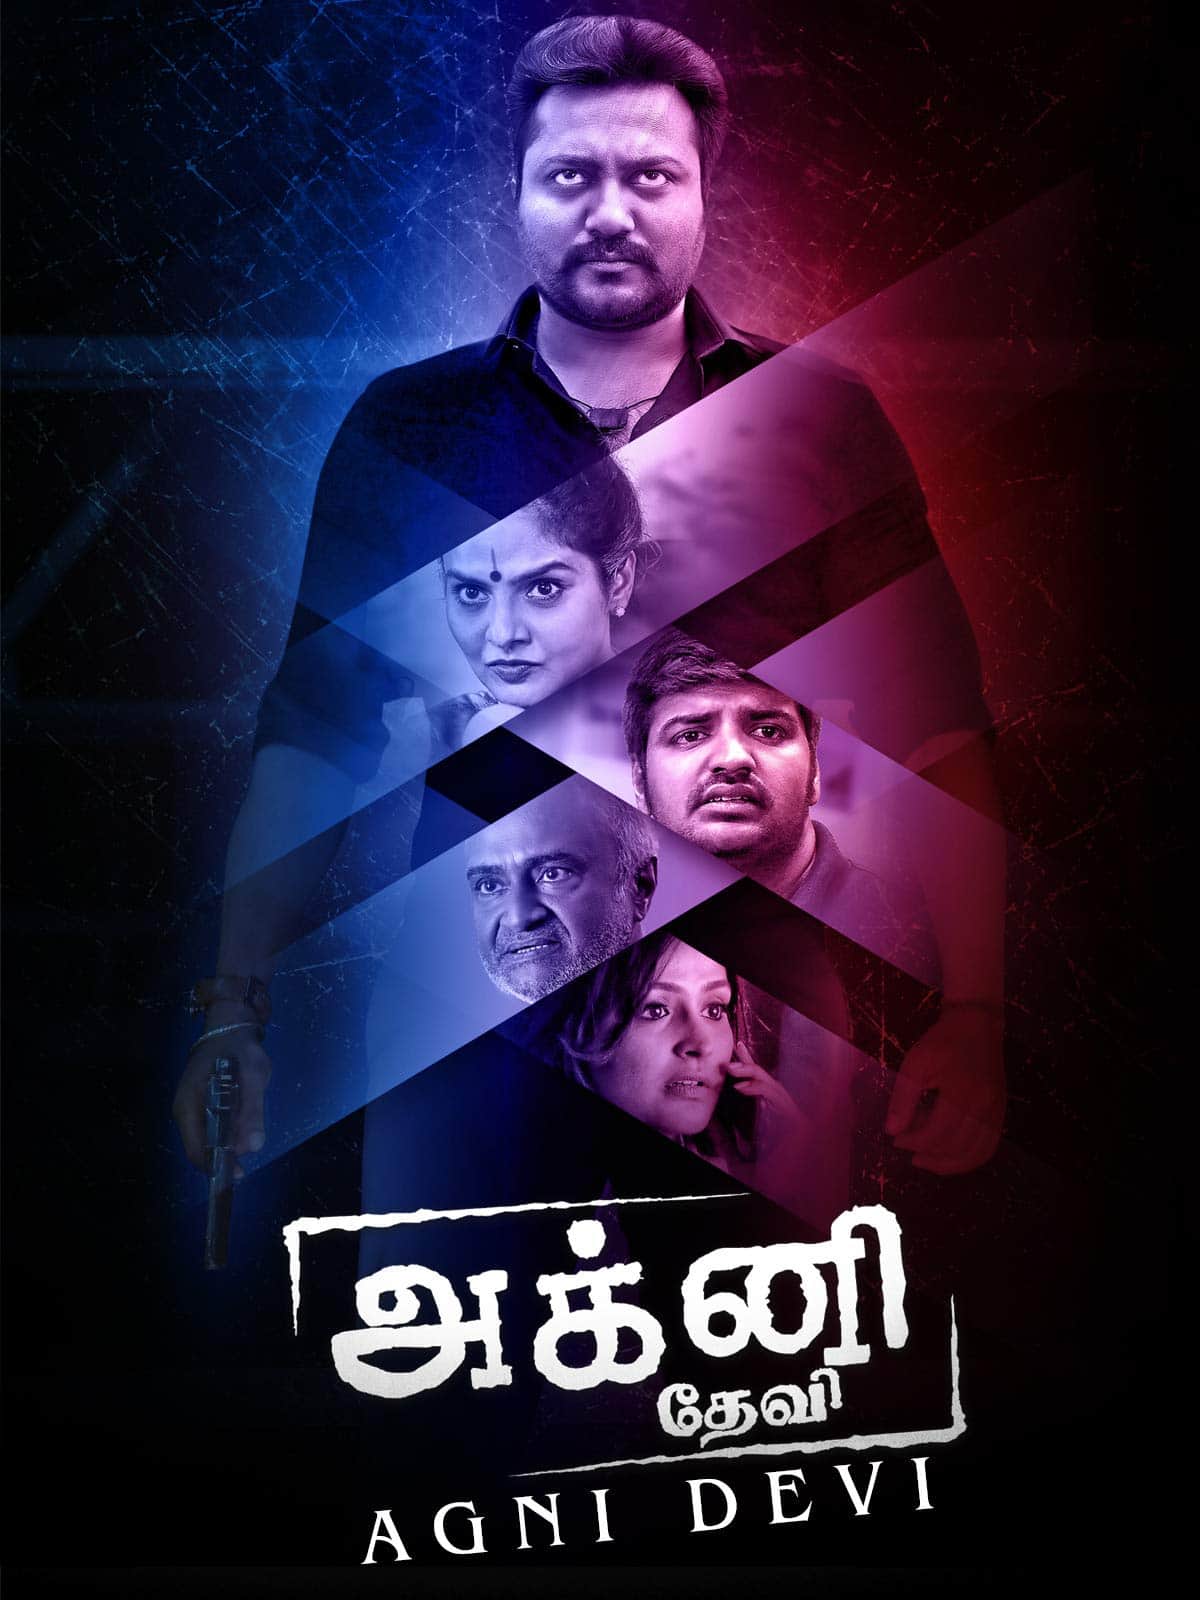 Agni Devi 2019 Tamil Crime Movie Online